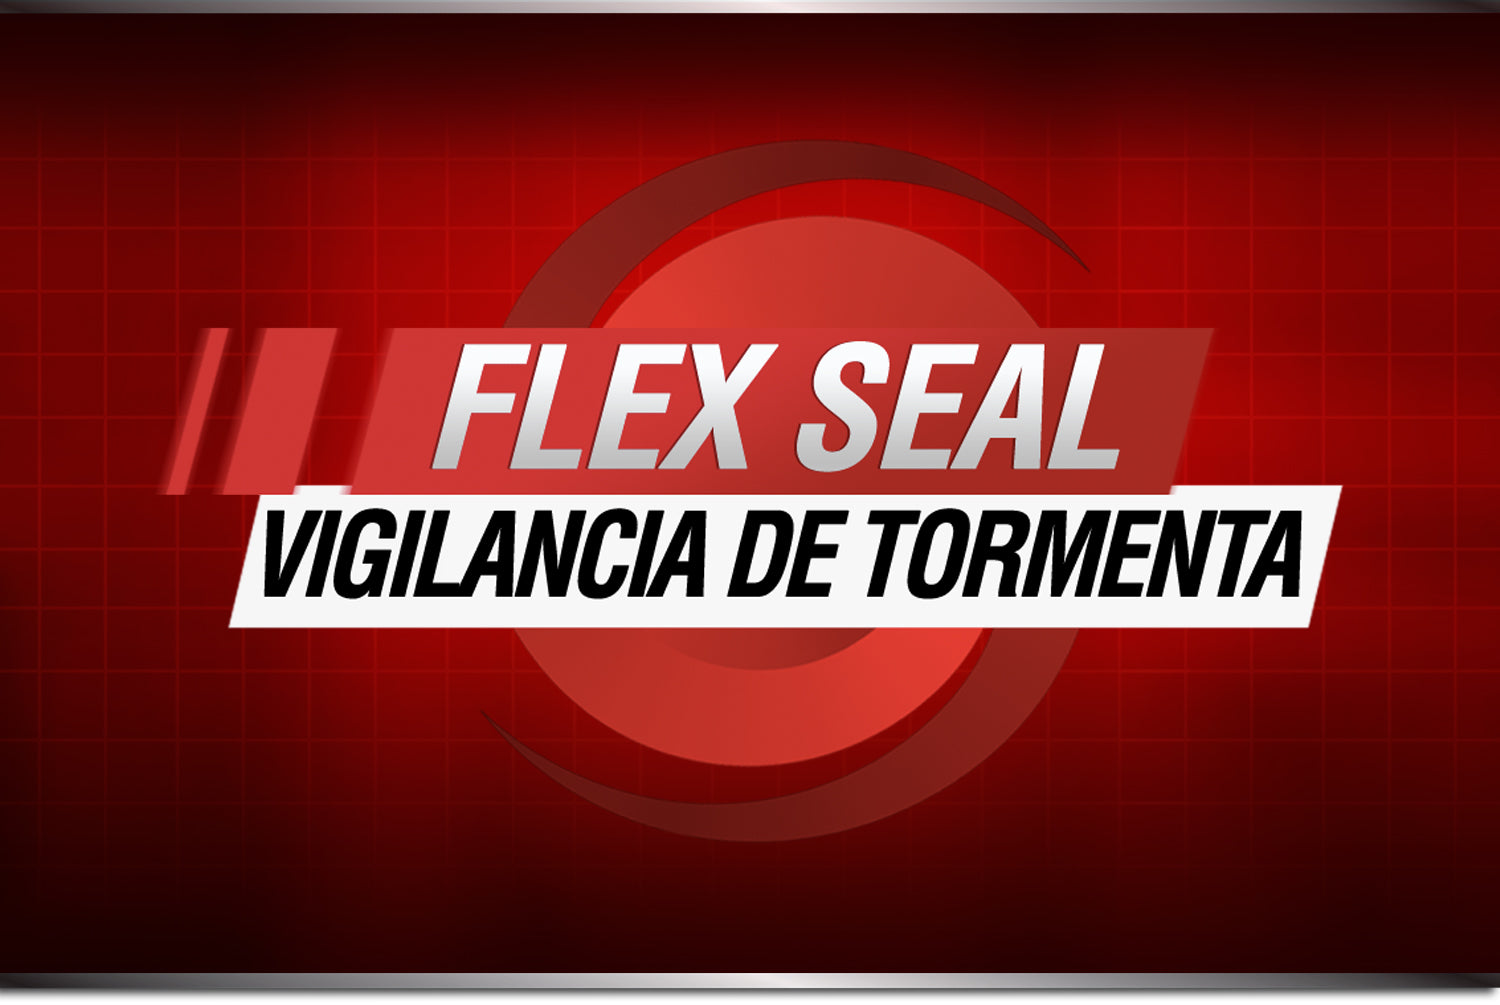 Vigilancia tormentas flex seal